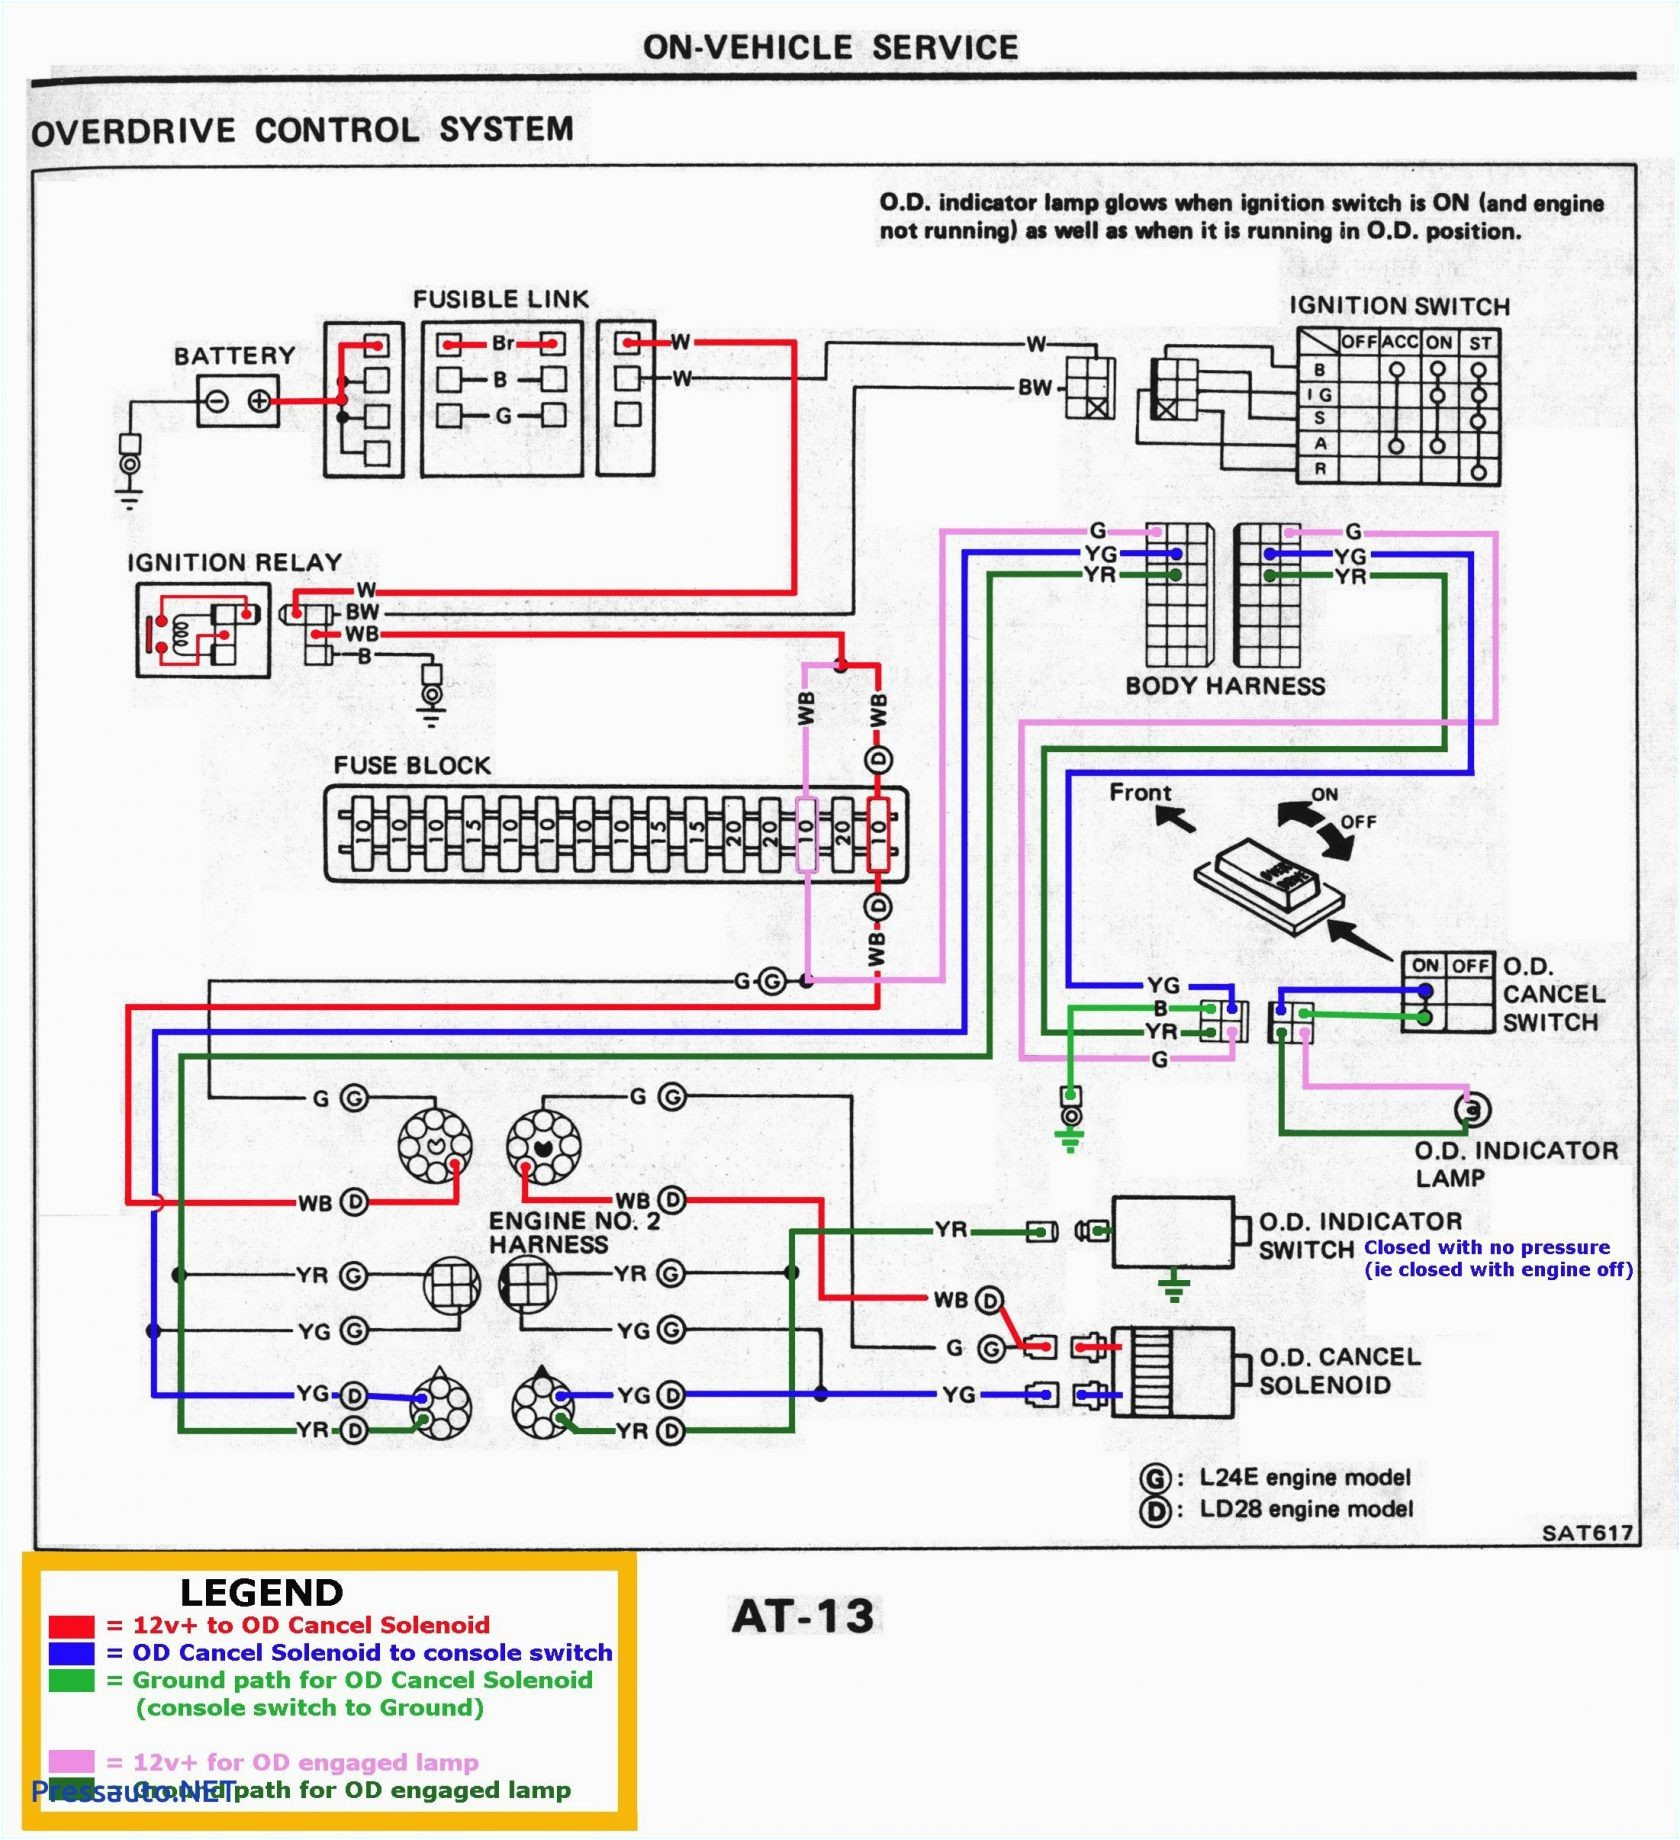 motor wiring diagram 19 wiring diagram blog 1970 wiper motor wiring diagram motor wiring diagram 19